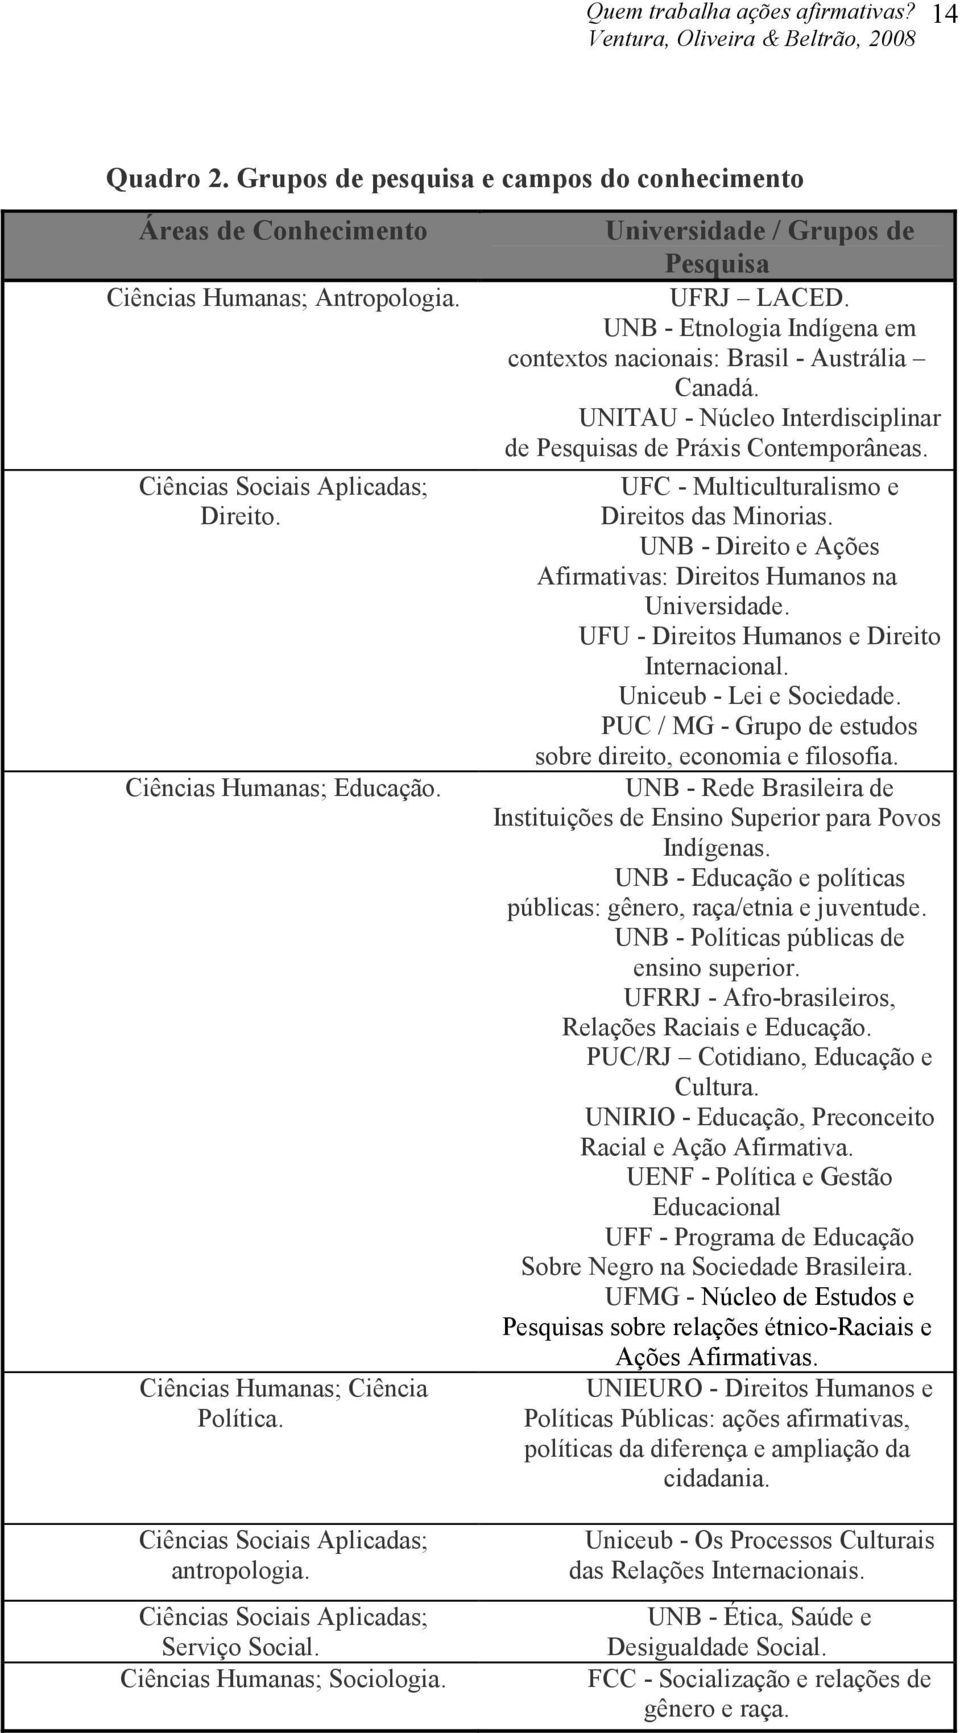 Universidade / Grupos de Pesquisa UFRJ LACED. UNB - Etnologia Indígena em contextos nacionais: Brasil - Austrália Canadá. UNITAU - Núcleo Interdisciplinar de Pesquisas de Práxis Contemporâneas.